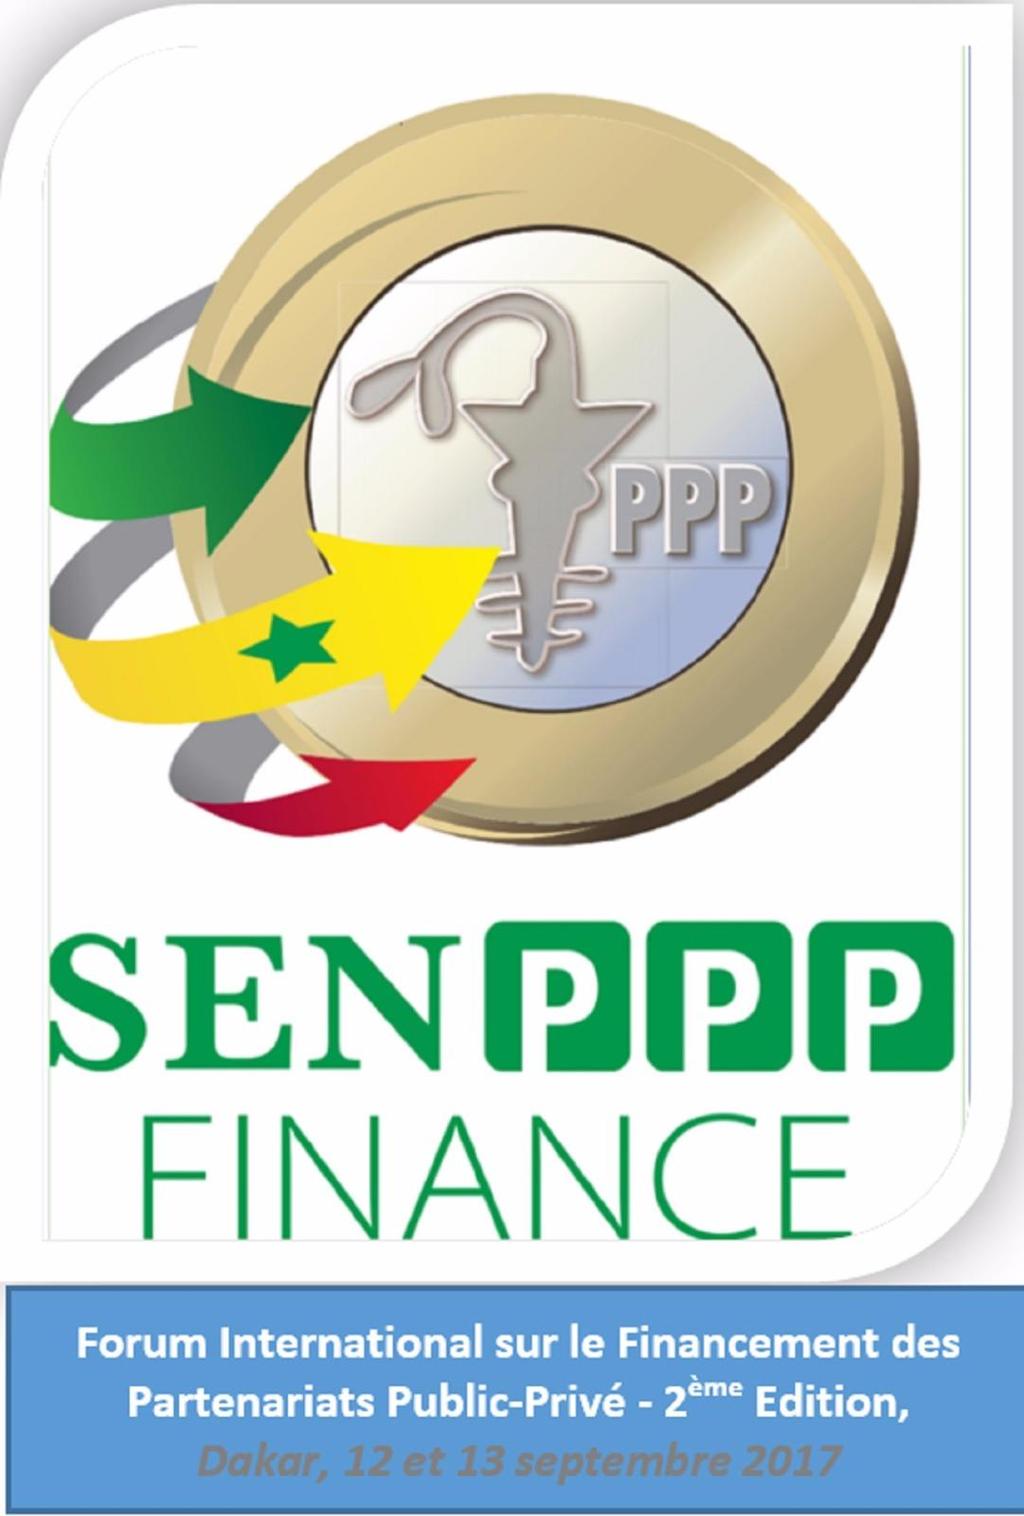 Make Dakar, the time of Sen PPP Finance, the capital of